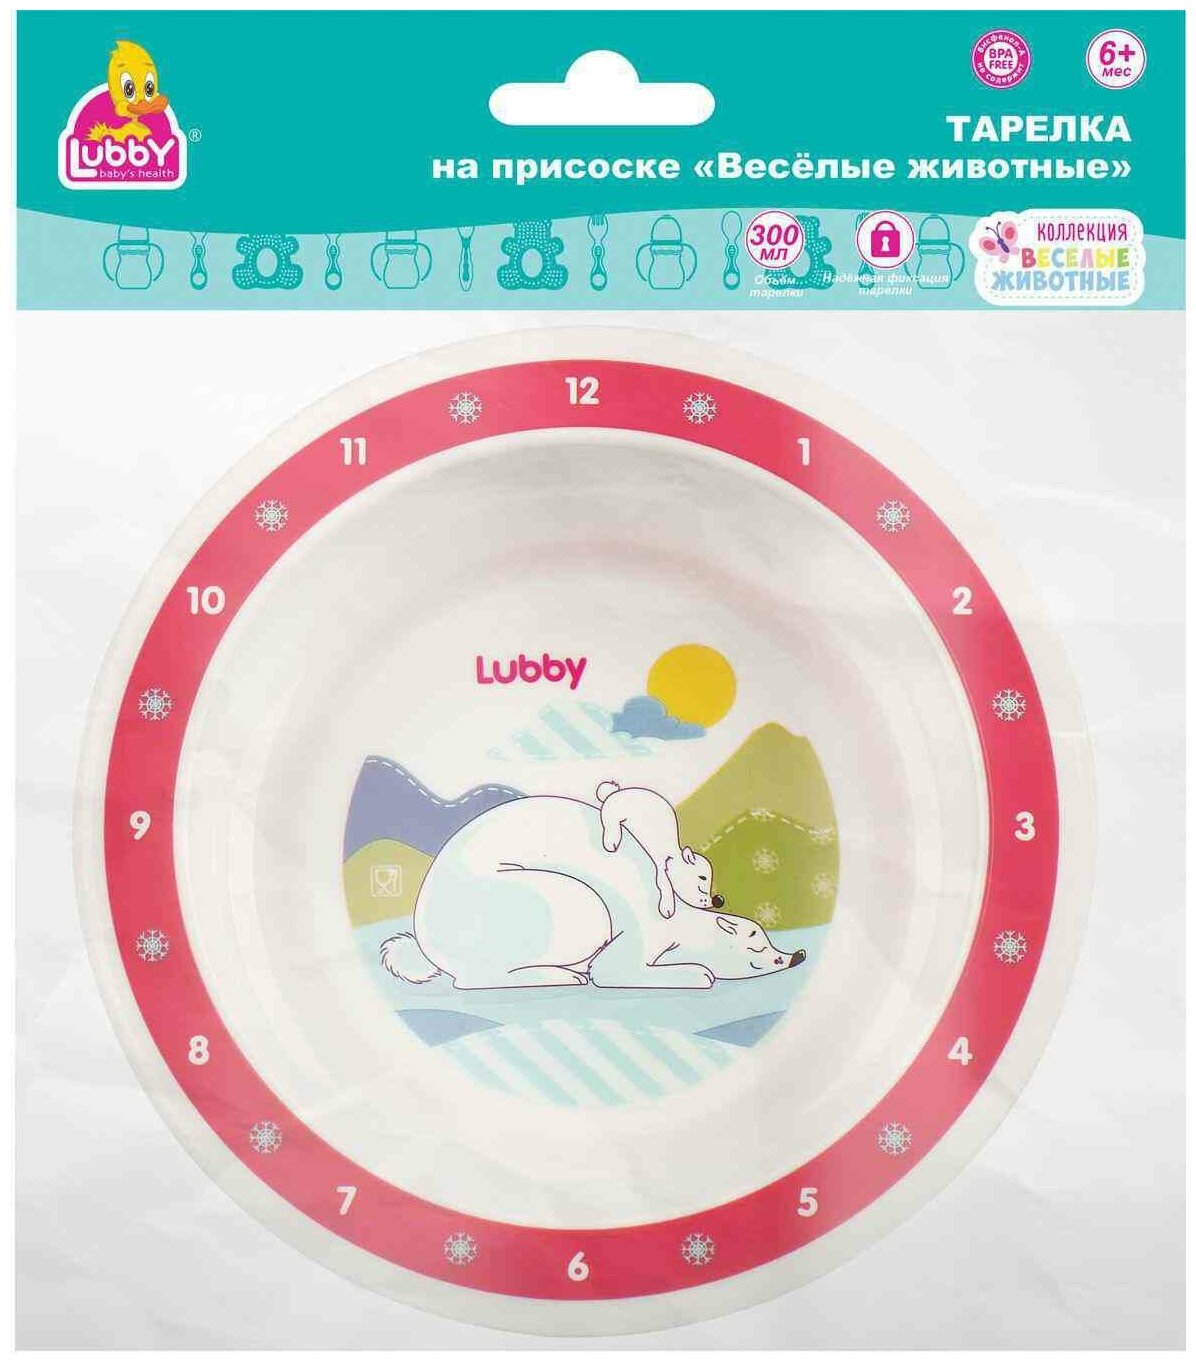 Тарелка Lubby "Весёлые животные" пластиковая, с присоской - фото №3